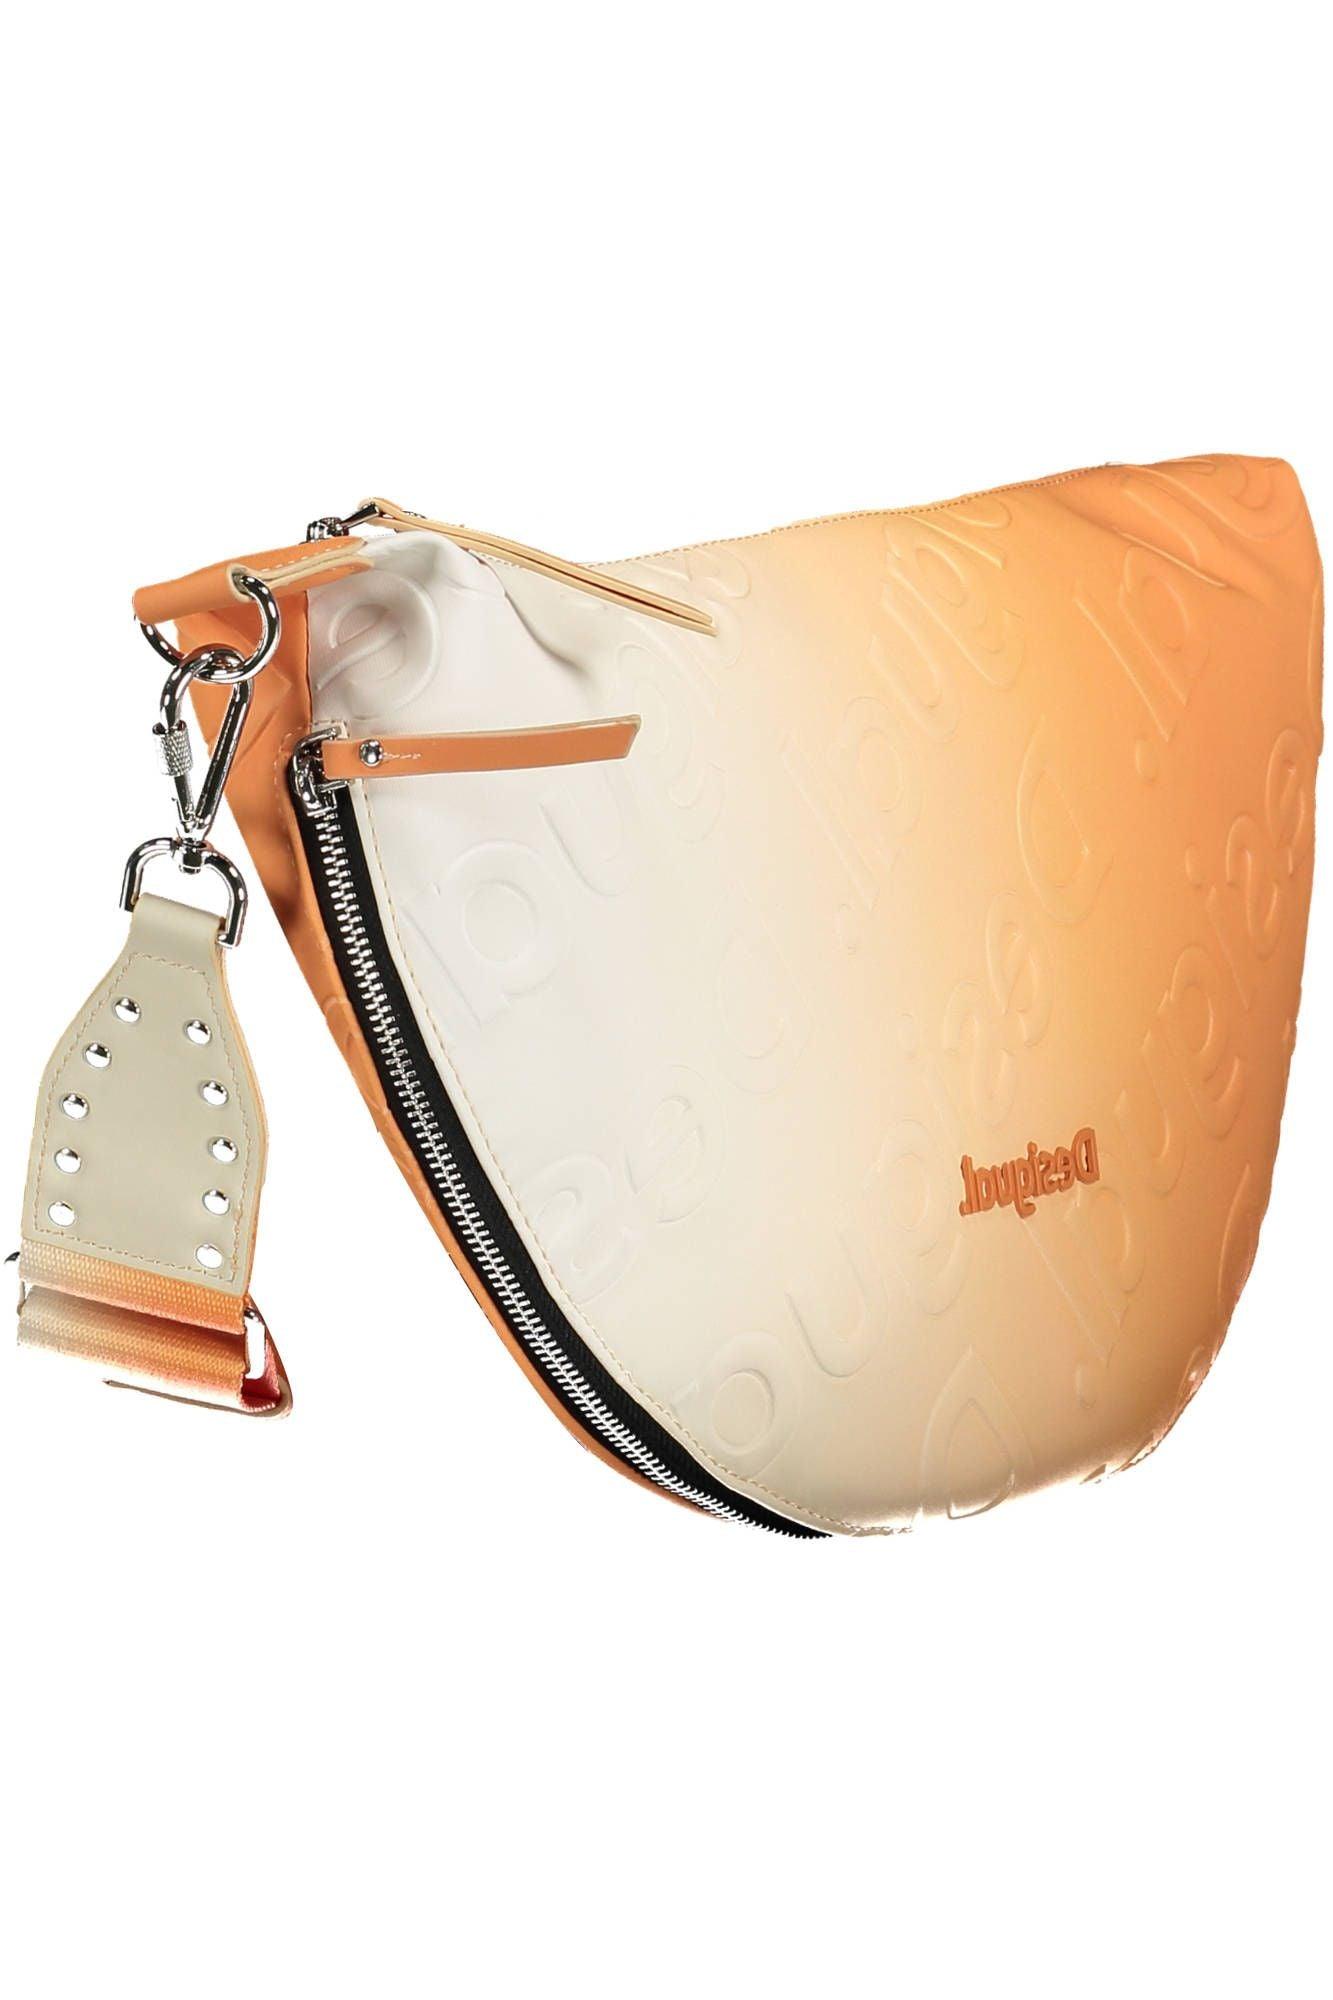 Desigual Vibrant Orange Expandable Handbag - PER.FASHION